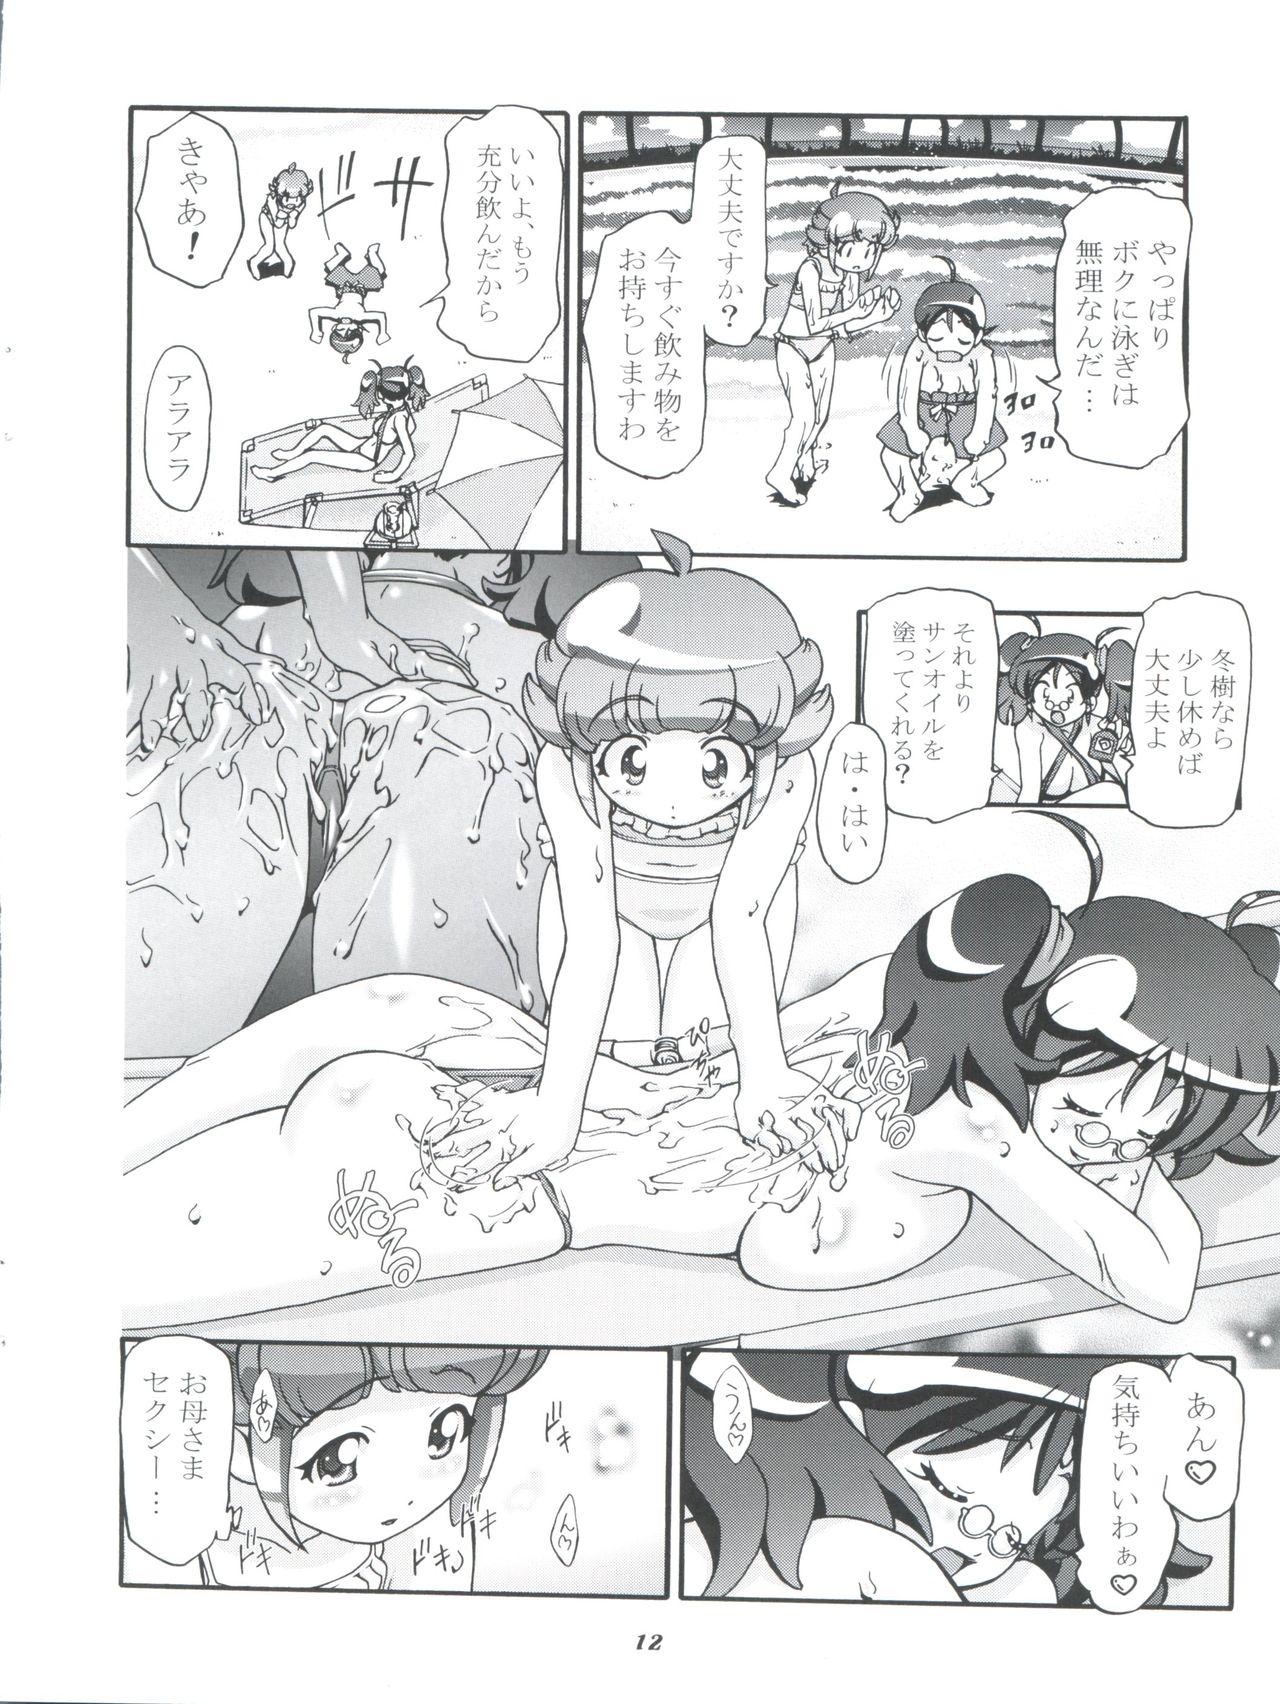 Sextoy Aki Momo - Autumn Peach - Keroro gunsou Ikillitts - Page 12